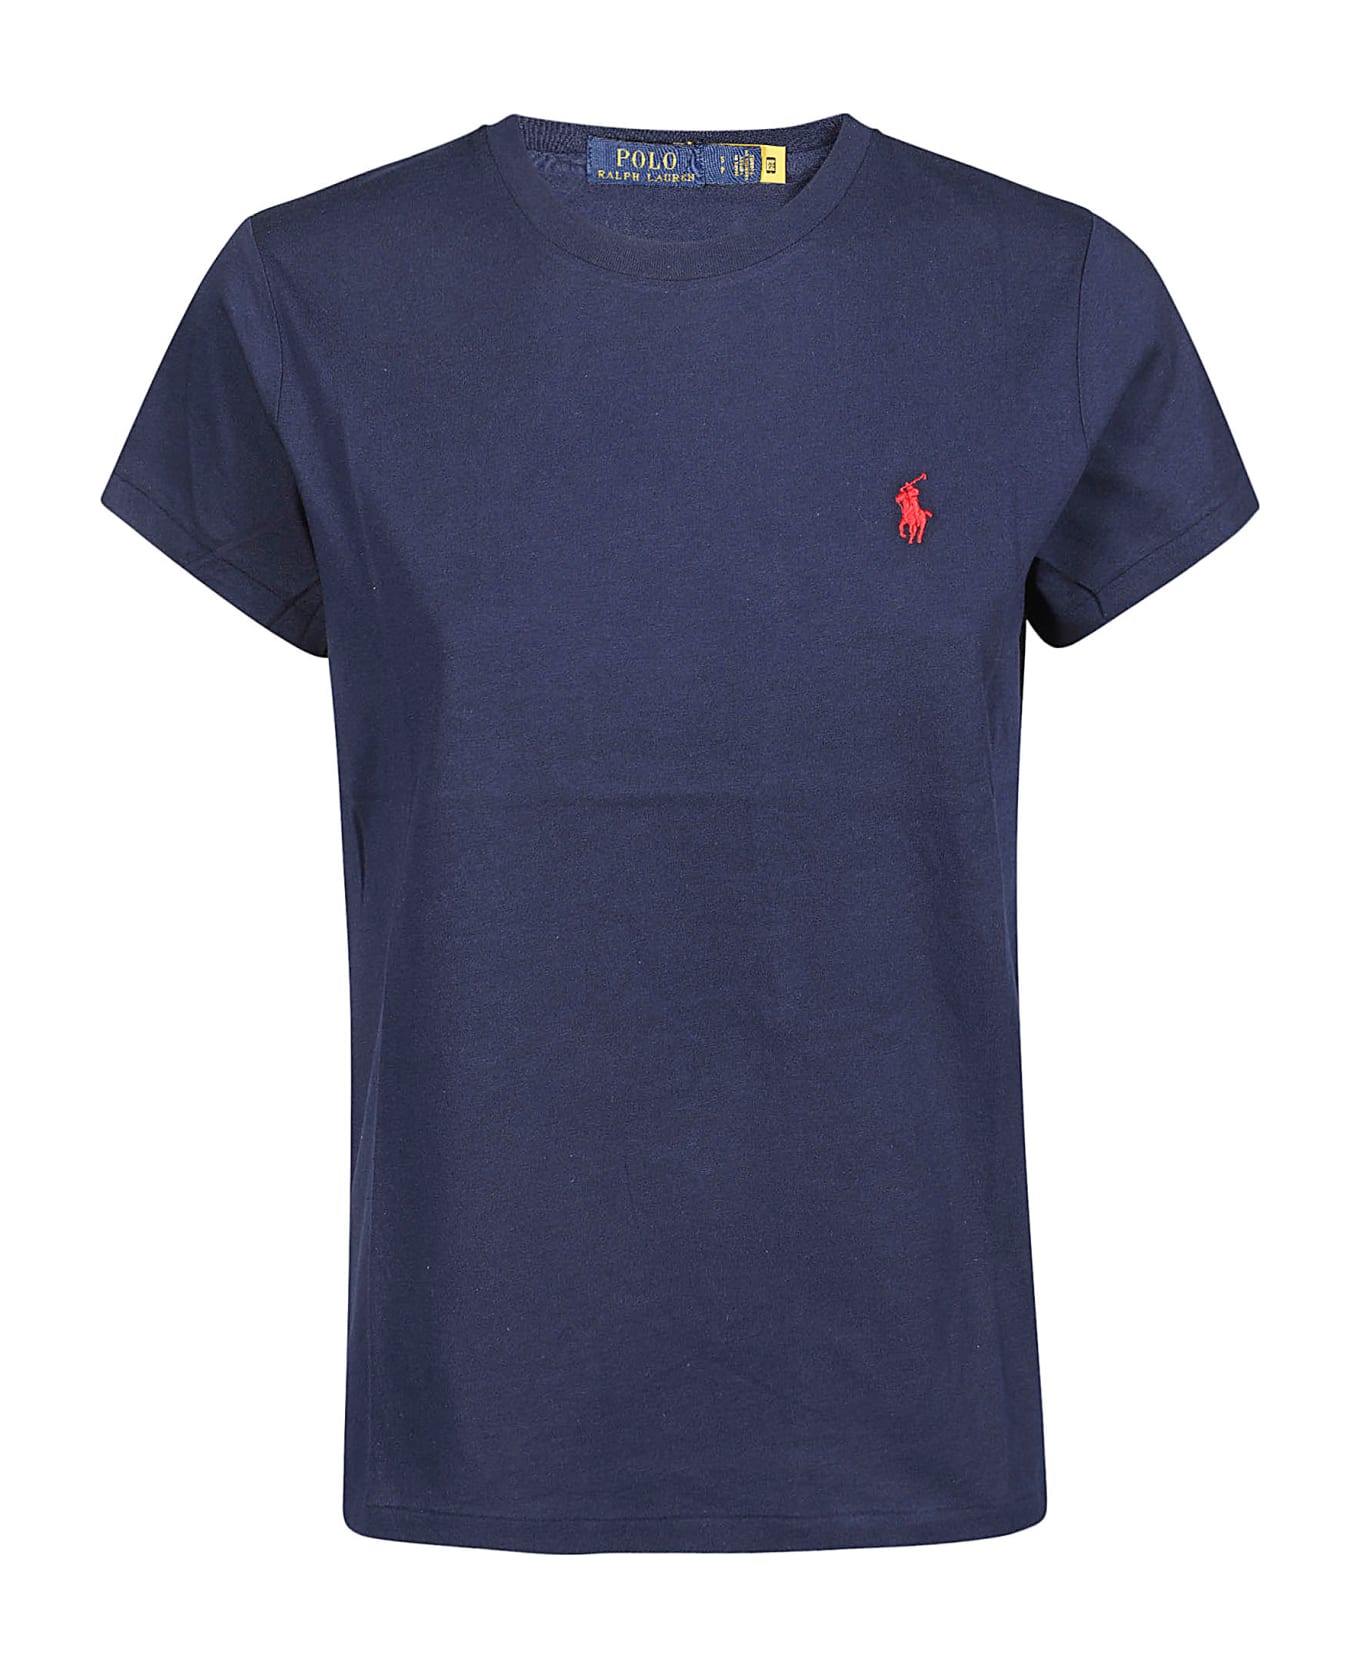 Polo Ralph Lauren New T-shirt - Cruise Navy